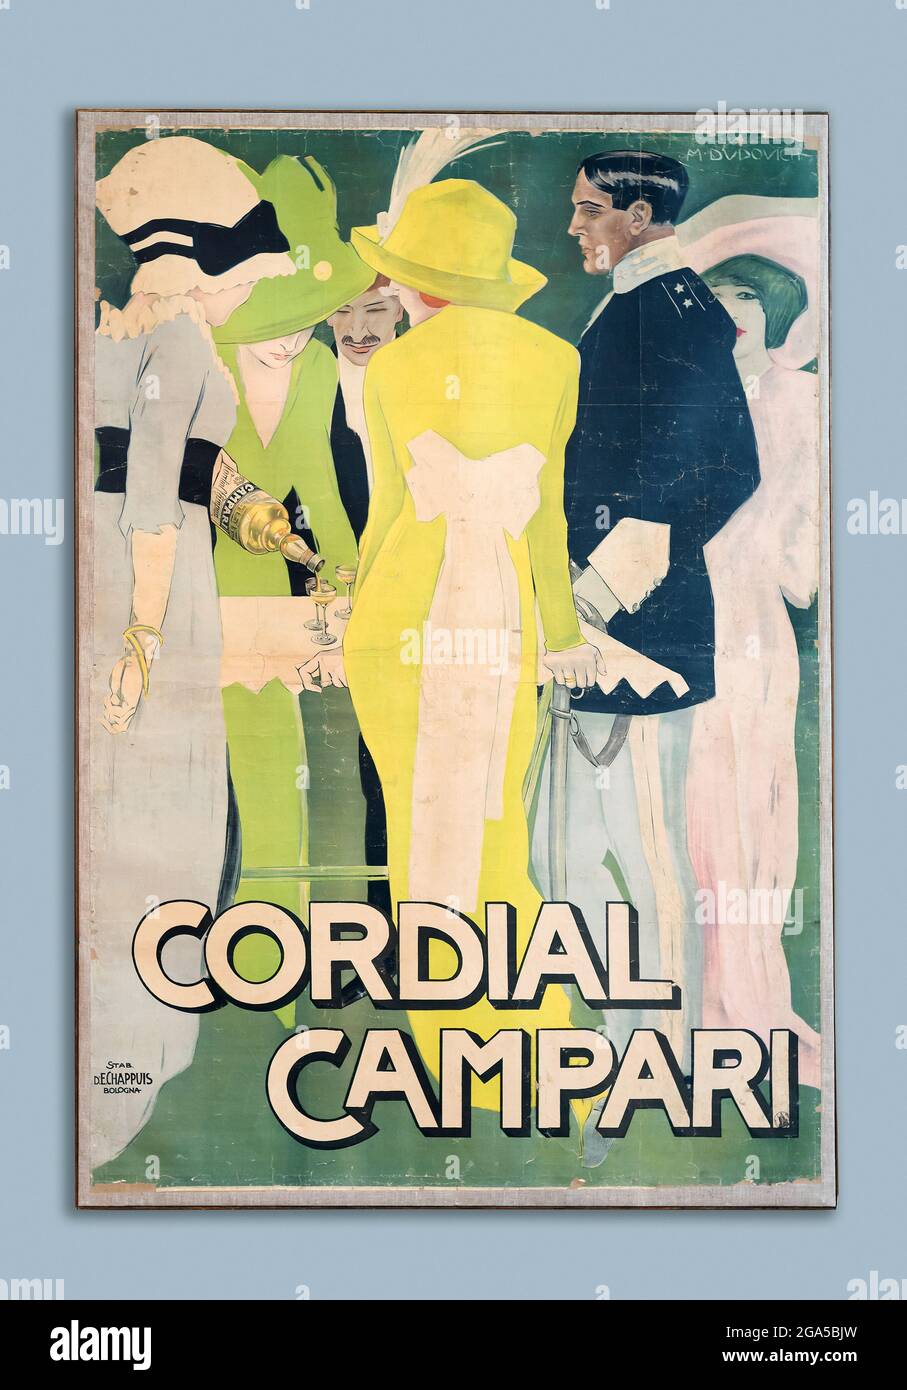 Cartel de publicidad de Campari italiano vintage con texto - Cordial Campari - y un grupo de personas con atuendo formal a la antigua usanza que vierte cócteles a la t. Foto de stock